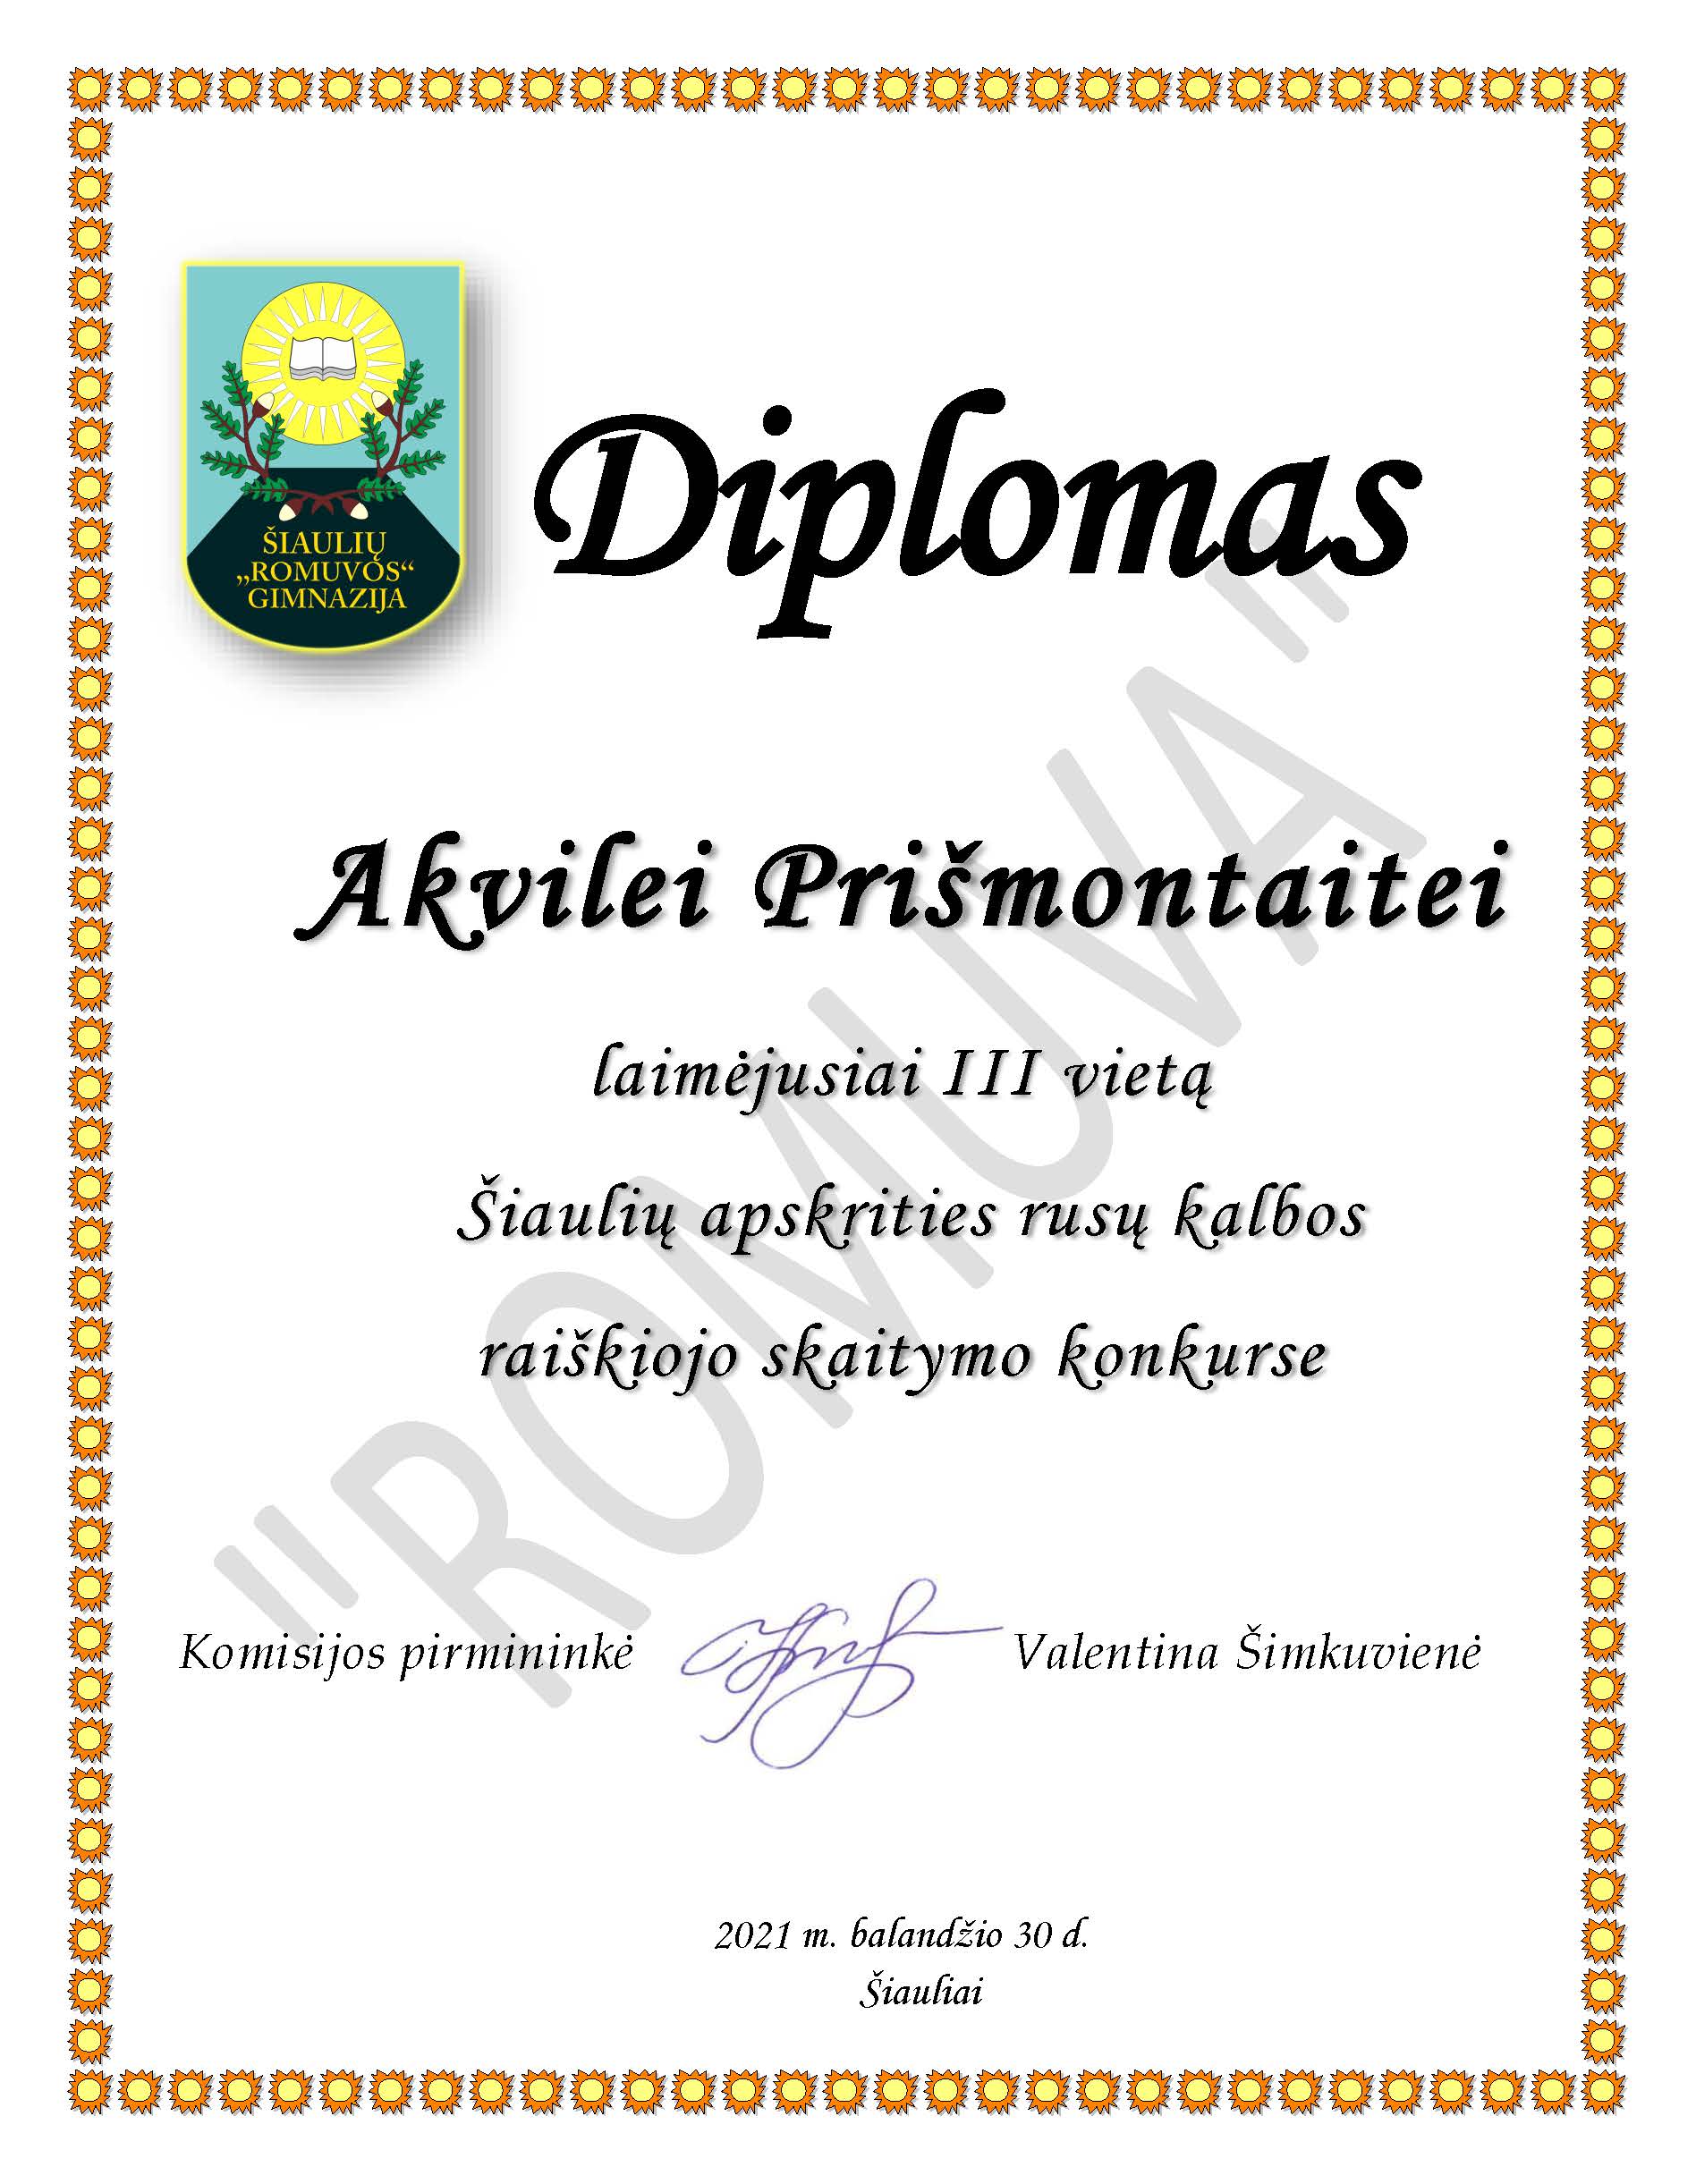 Diplomas Akvile